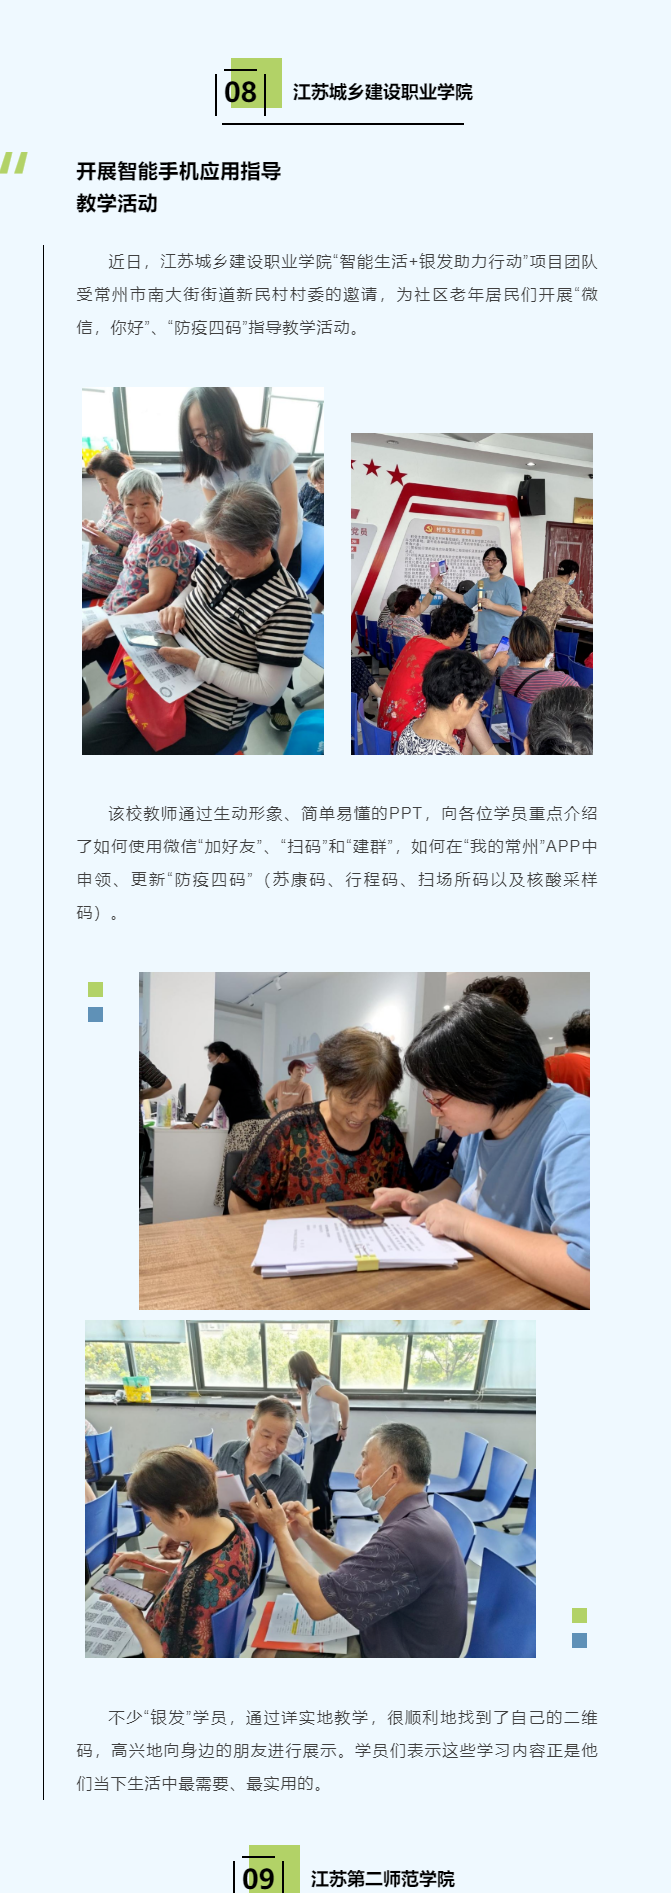 江蘇教育官微：江蘇城鄉建設職業學院開展智能手機應用指導教學活動